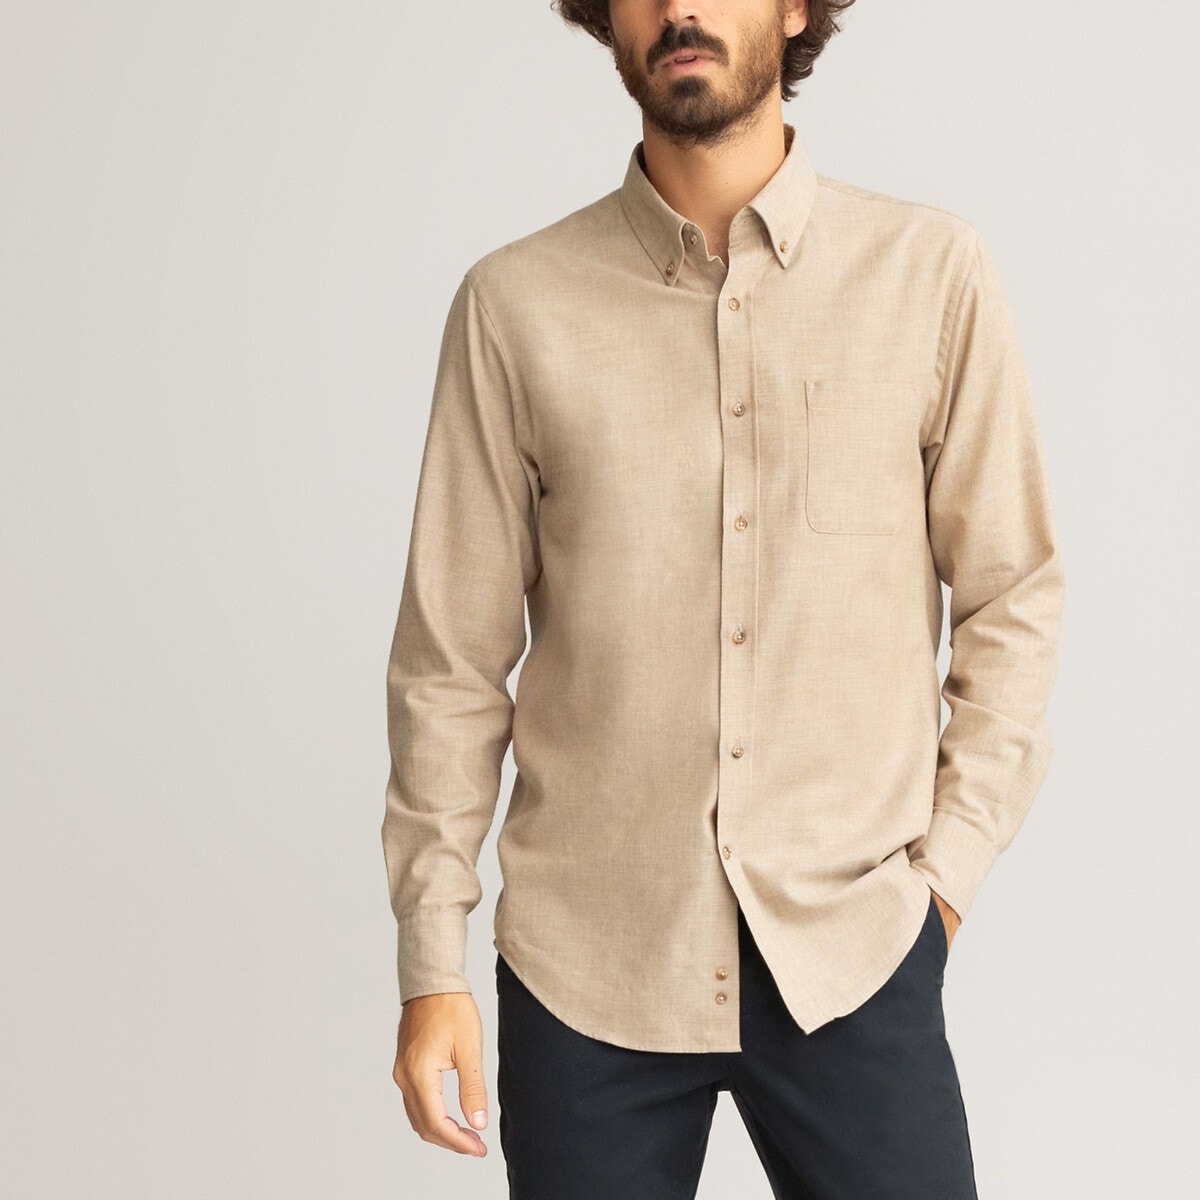 ΑΝΔΡΑΣ | Μπλούζες & Πουκάμισα | Πουκάμισα Φανελένιο πουκάμισο σε ίσια γραμμή